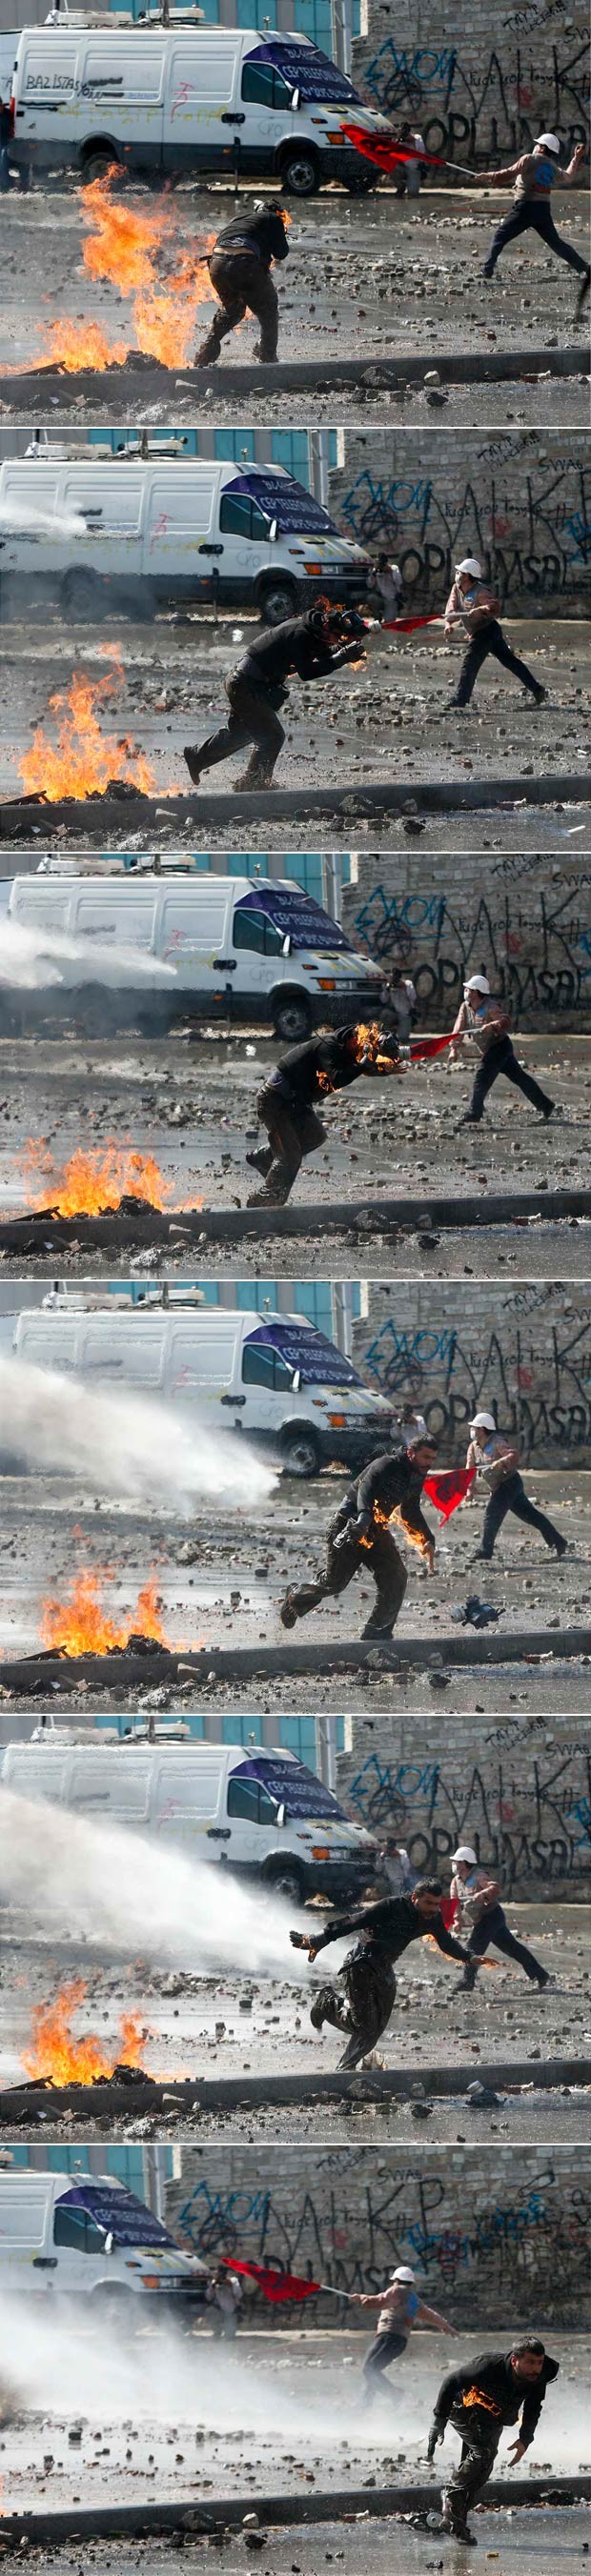 Sequência ampliada mostra o momento de pânico vivido pelo manifestante em chamas (Foto: Murad Sezer/Reuters)